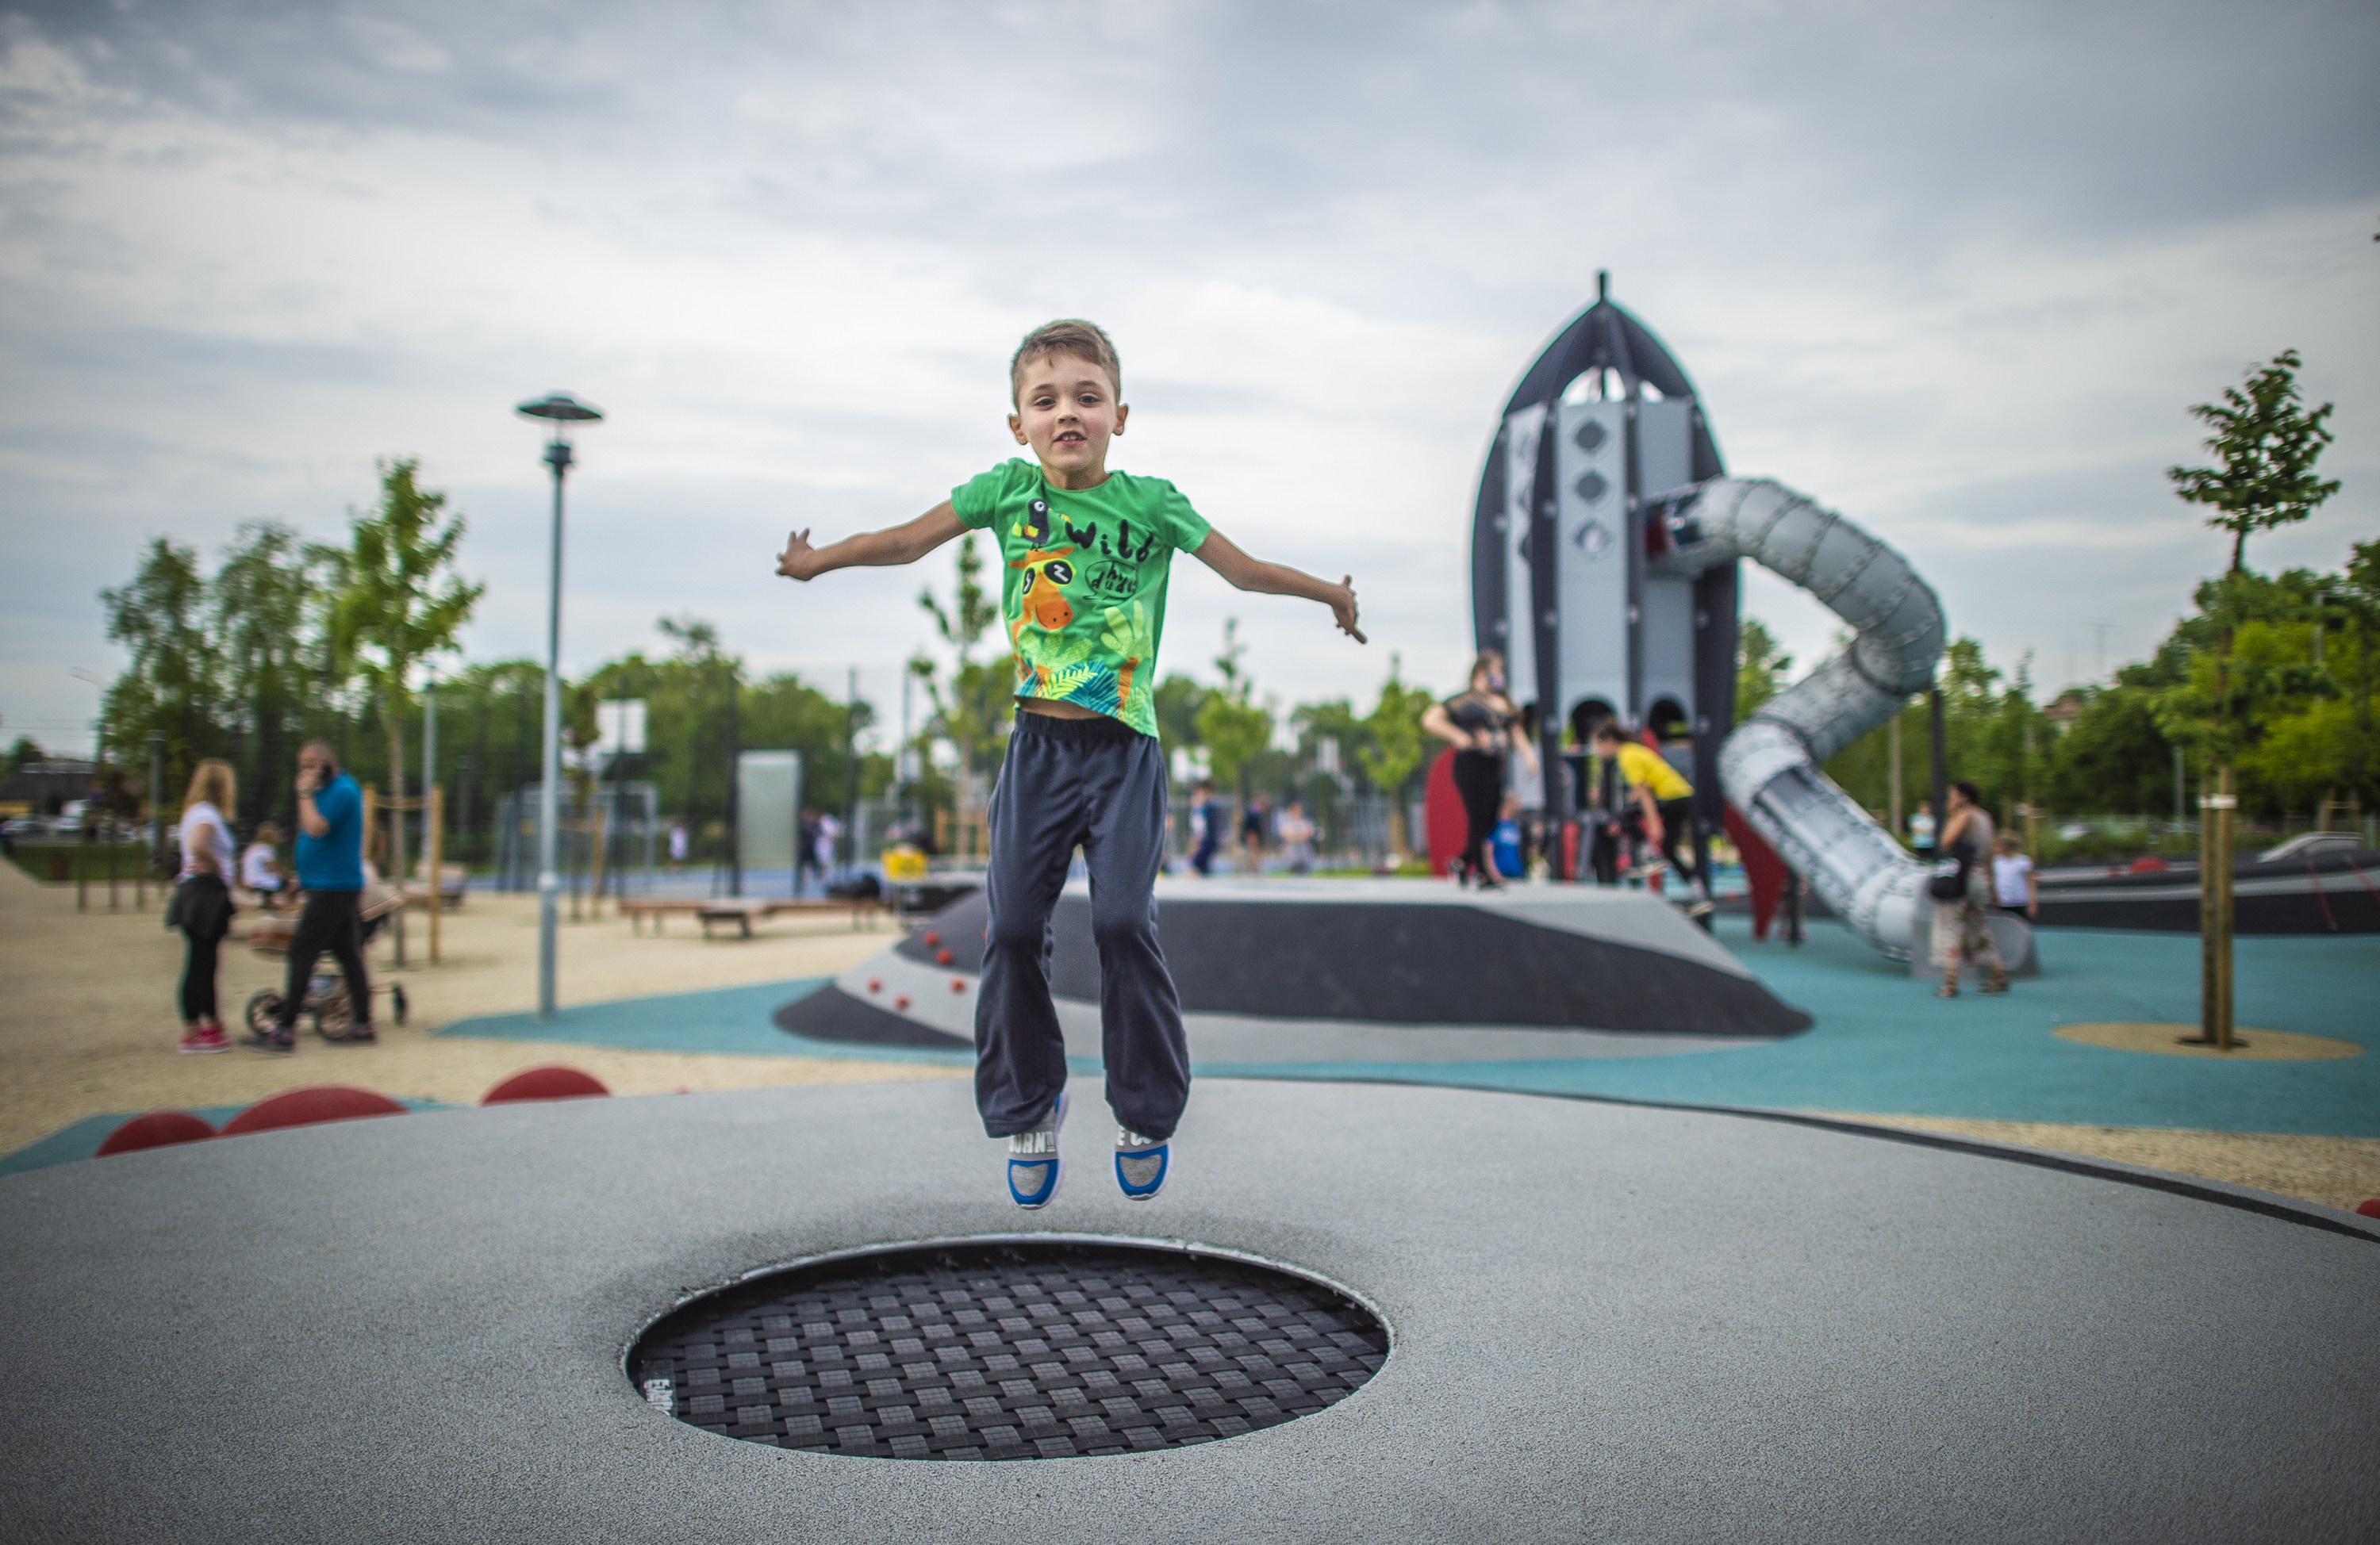 Űrhajó épült a gyerekeknek a Tejút parkban – a csepeli játszótér mellett sportpályákat is kialakítottak 